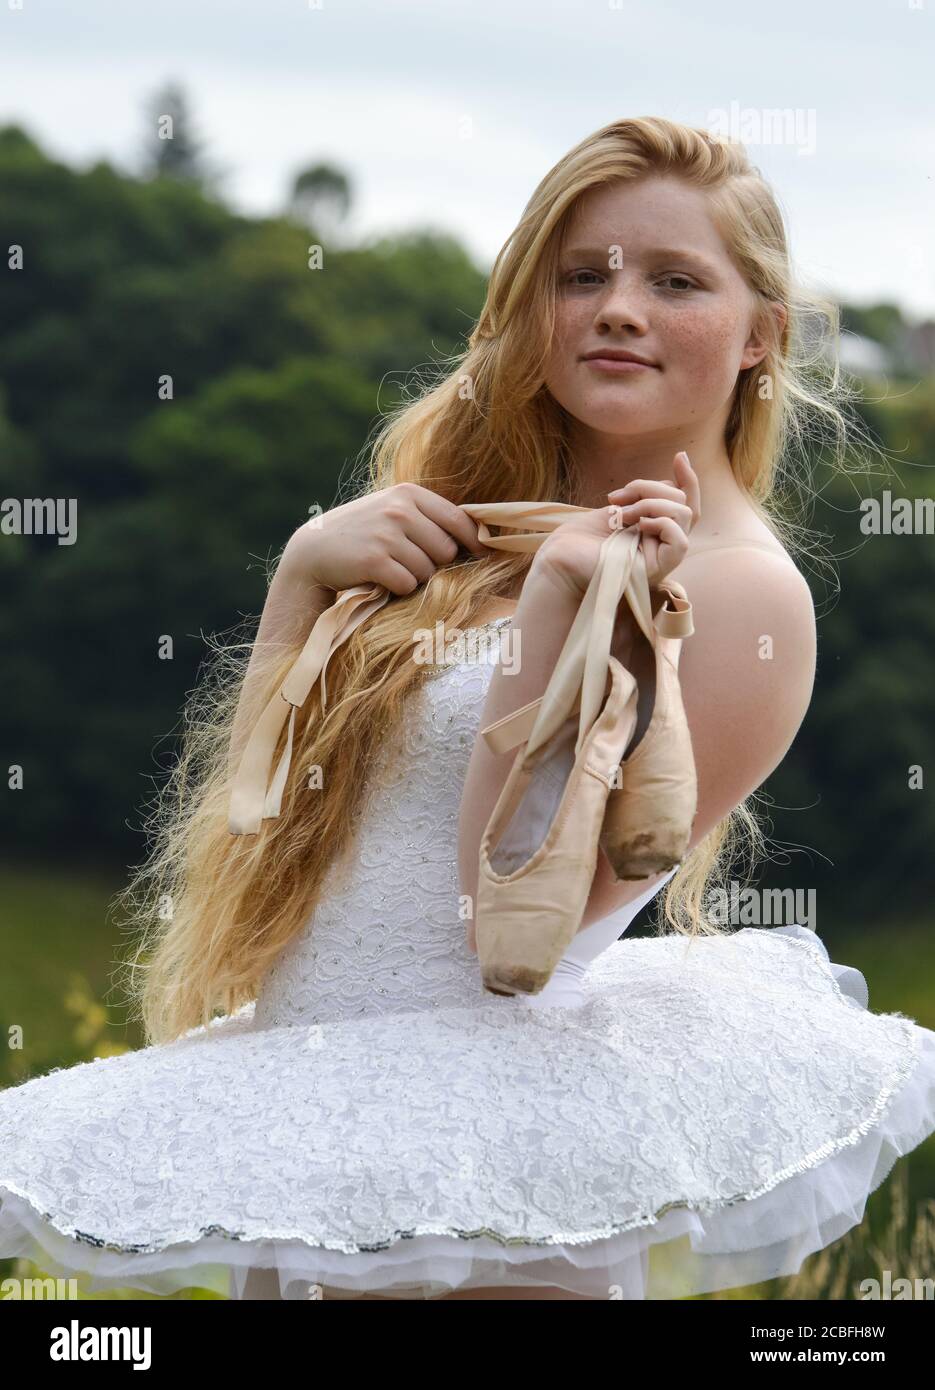 Eine Ballerina mit langen blonden Haaren und Sommersprossen starrt in die Kamera und hält ihre spitzenschuhe. Sie trägt ein weißes Tutu. Stockfoto